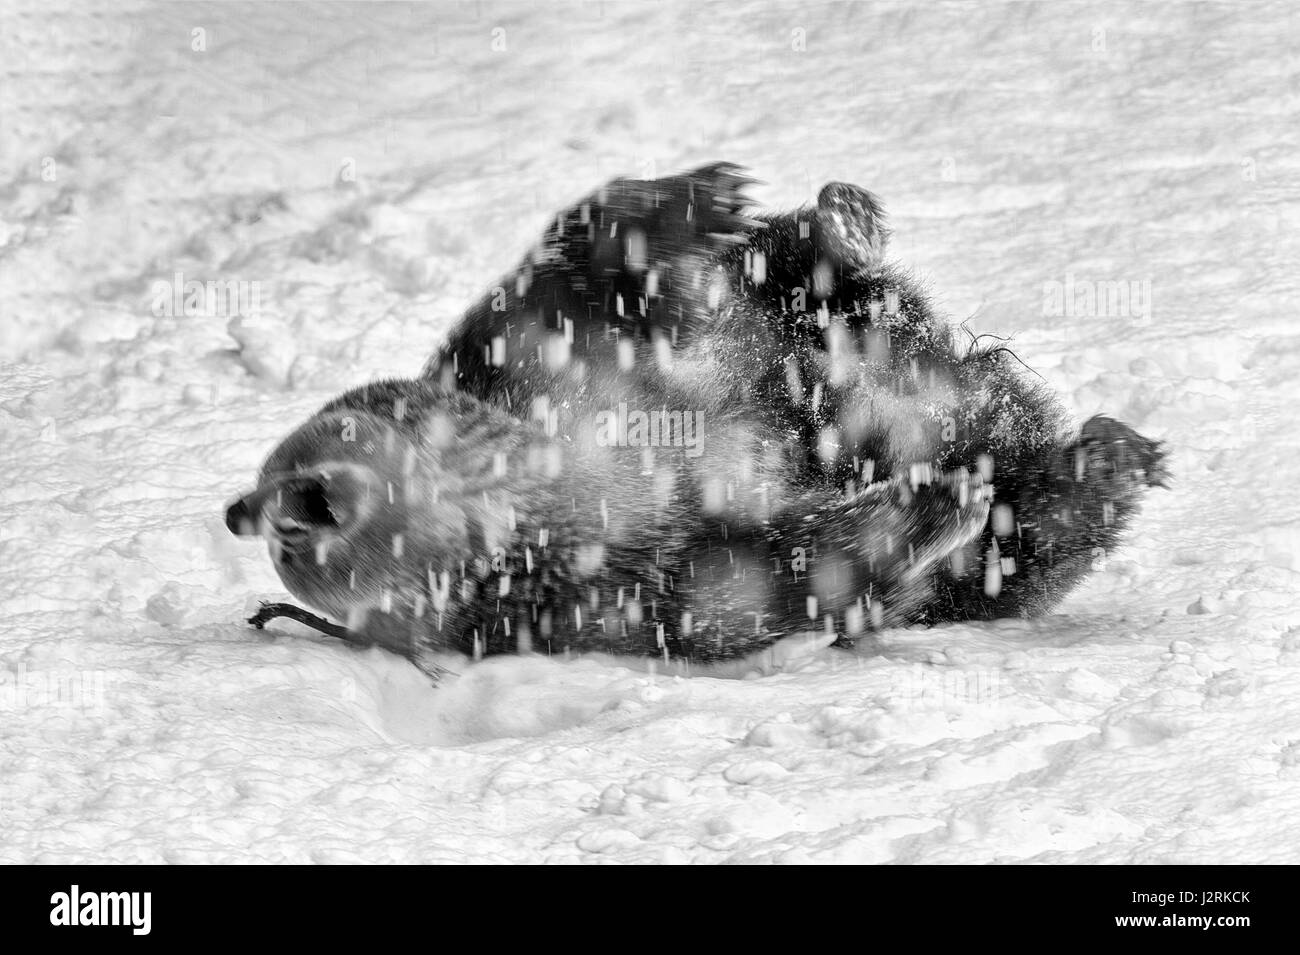 Solo para mujeres adultas Euroasiática de oso pardo (Ursus arctos) descontrol en una tormenta de nieve en invierno. (Bellas Artes, High Key, Blanco y negro) Foto de stock